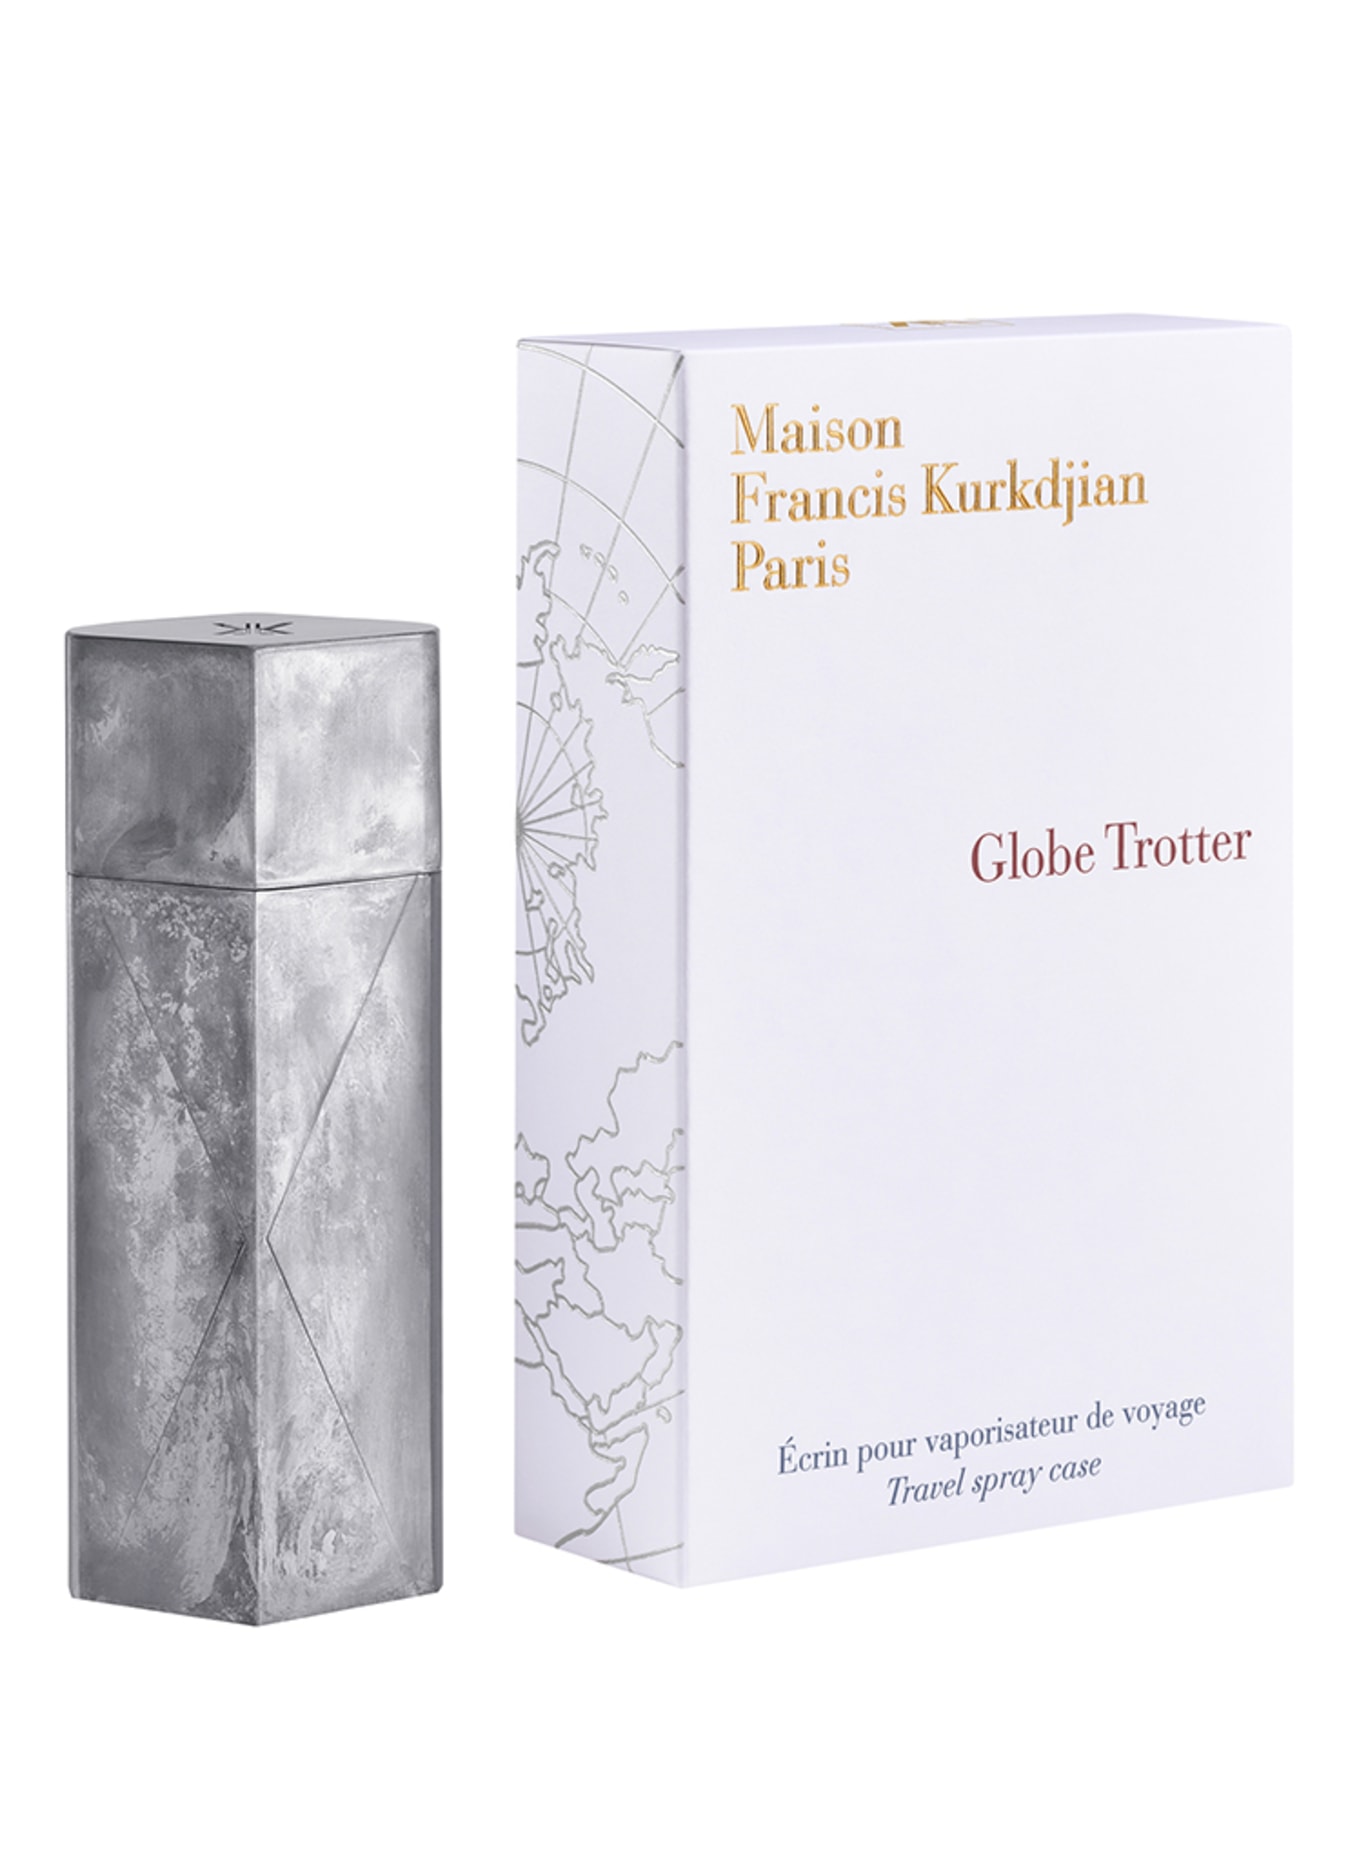 Maison Francis Kurkdjian Paris GLOBE TROTTER - ZINC EDITION (Obrázek 2)